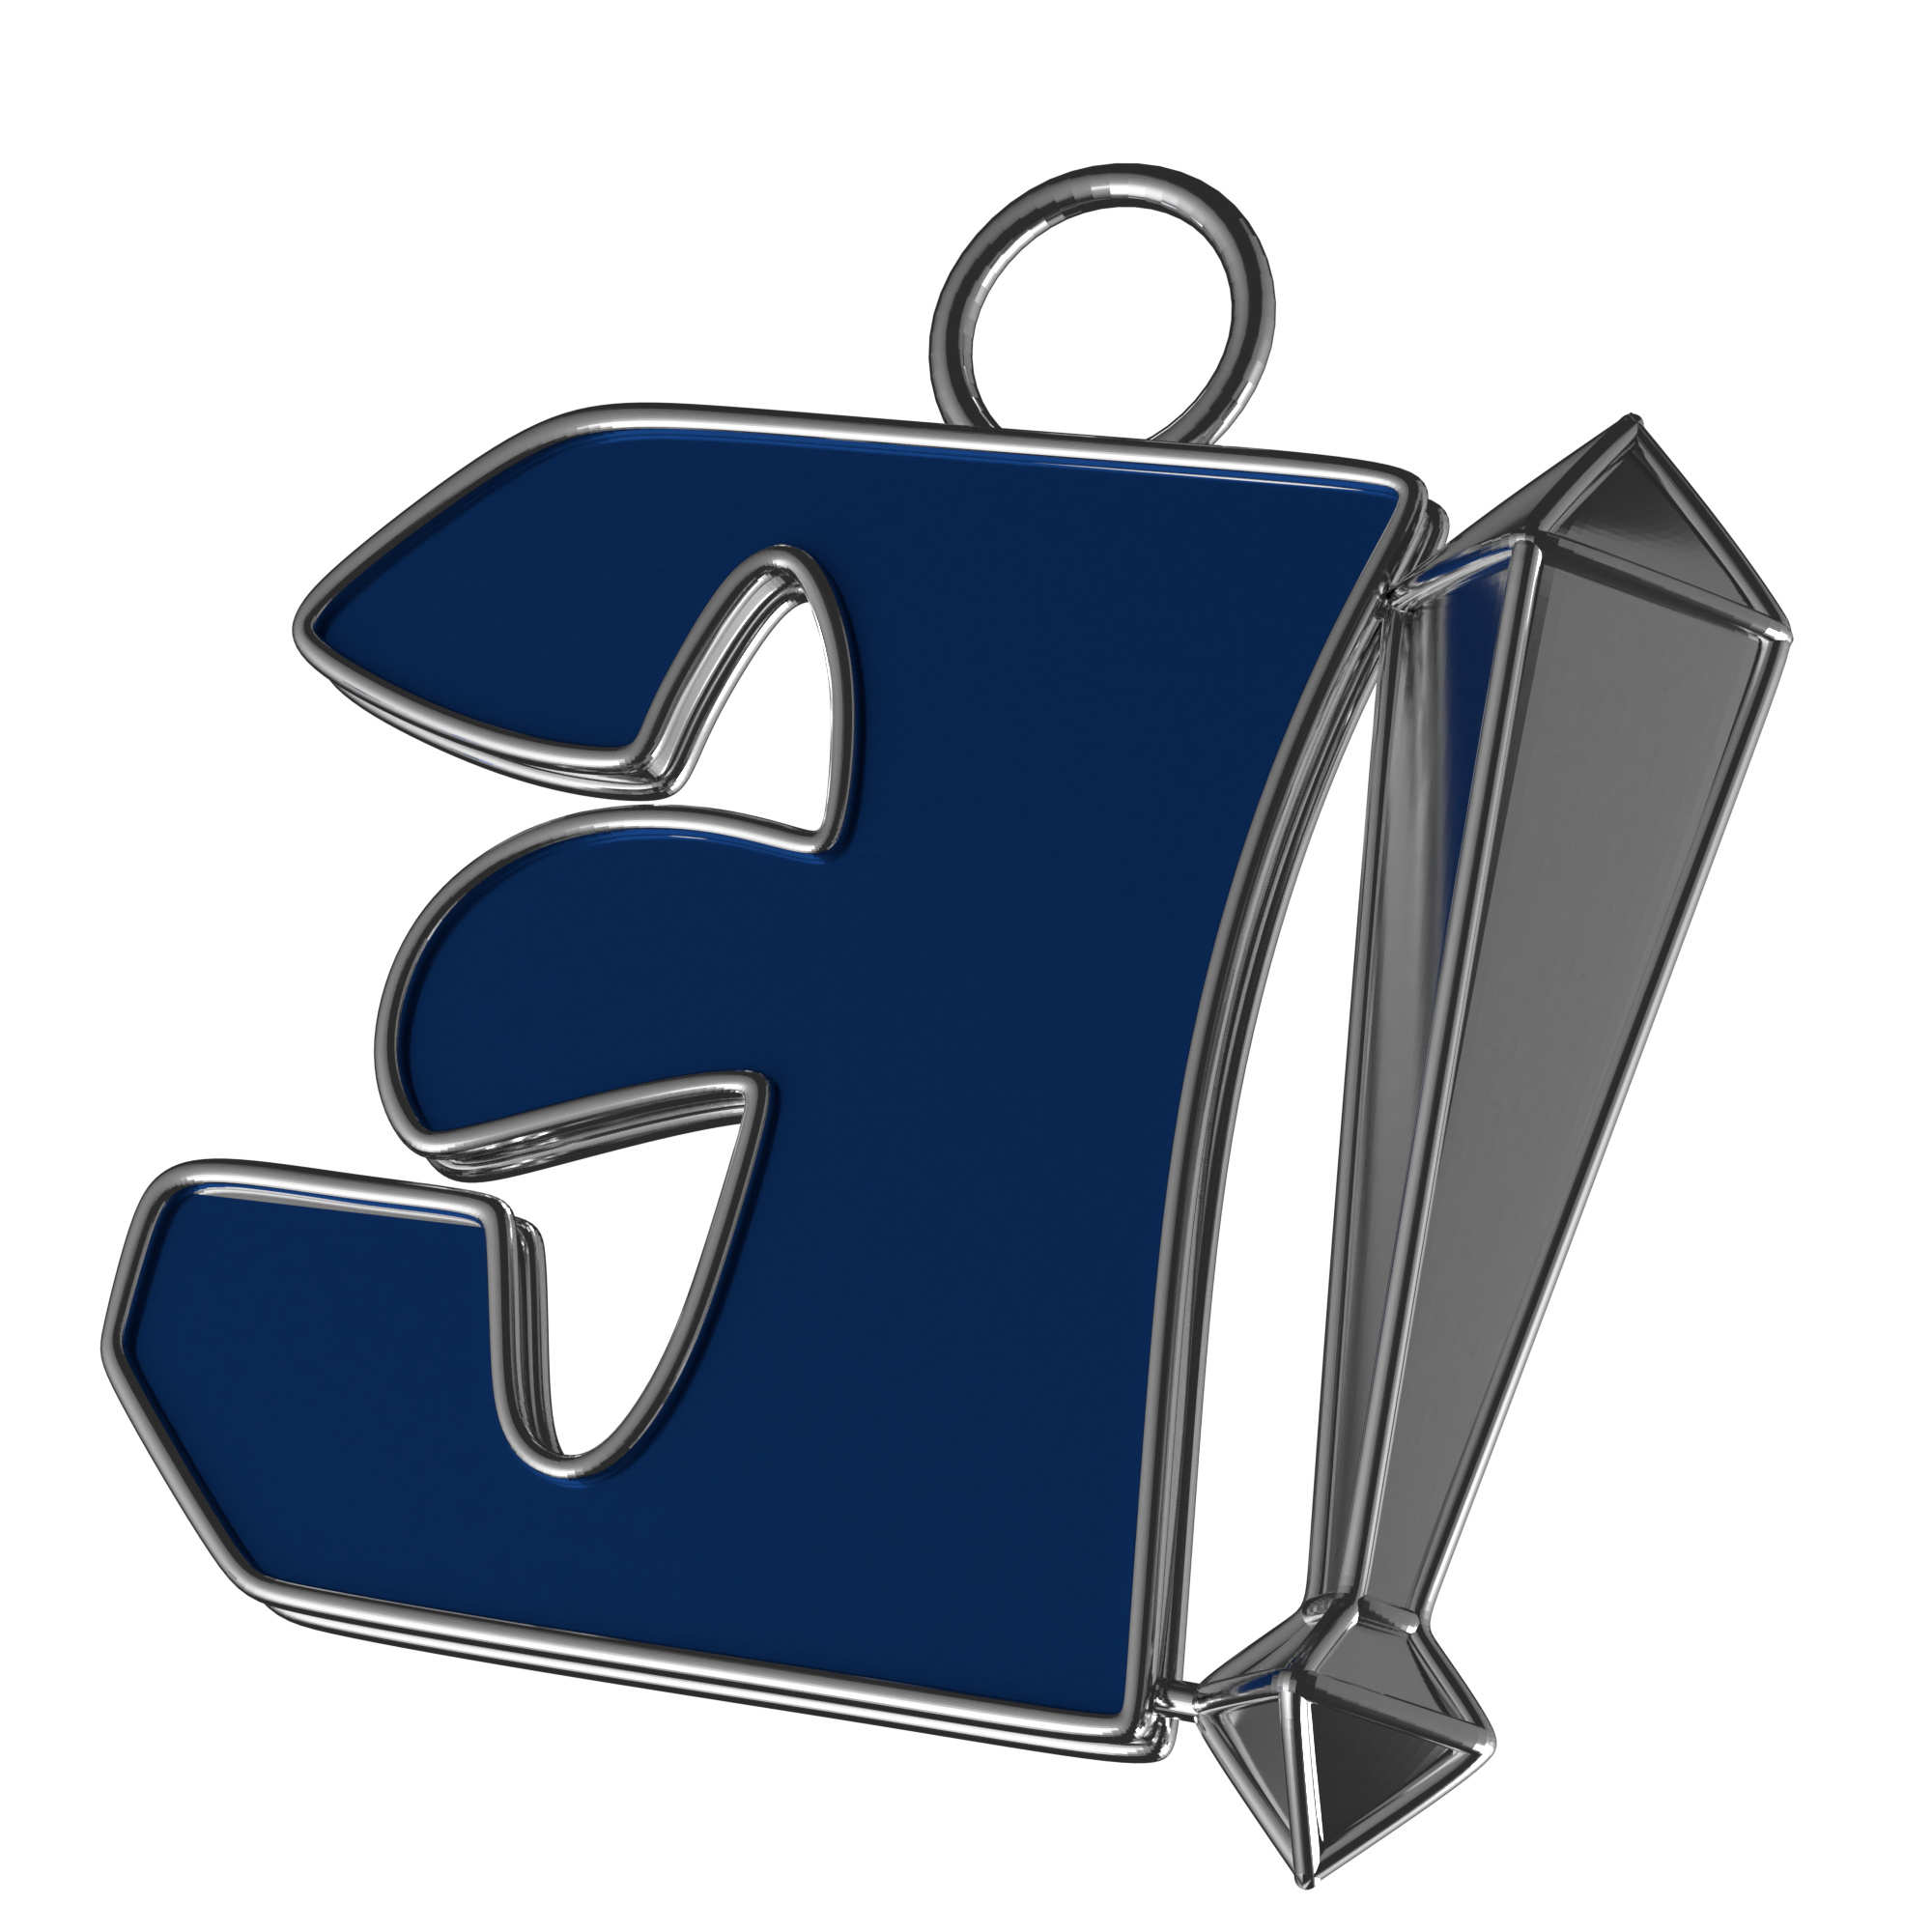 Immagine in alto a destra del portachiavi Singolar Key. Il portachiavi rappresenta una E al contrario smaltata di blu con un punto esclamativo affianco placcato d'argento.